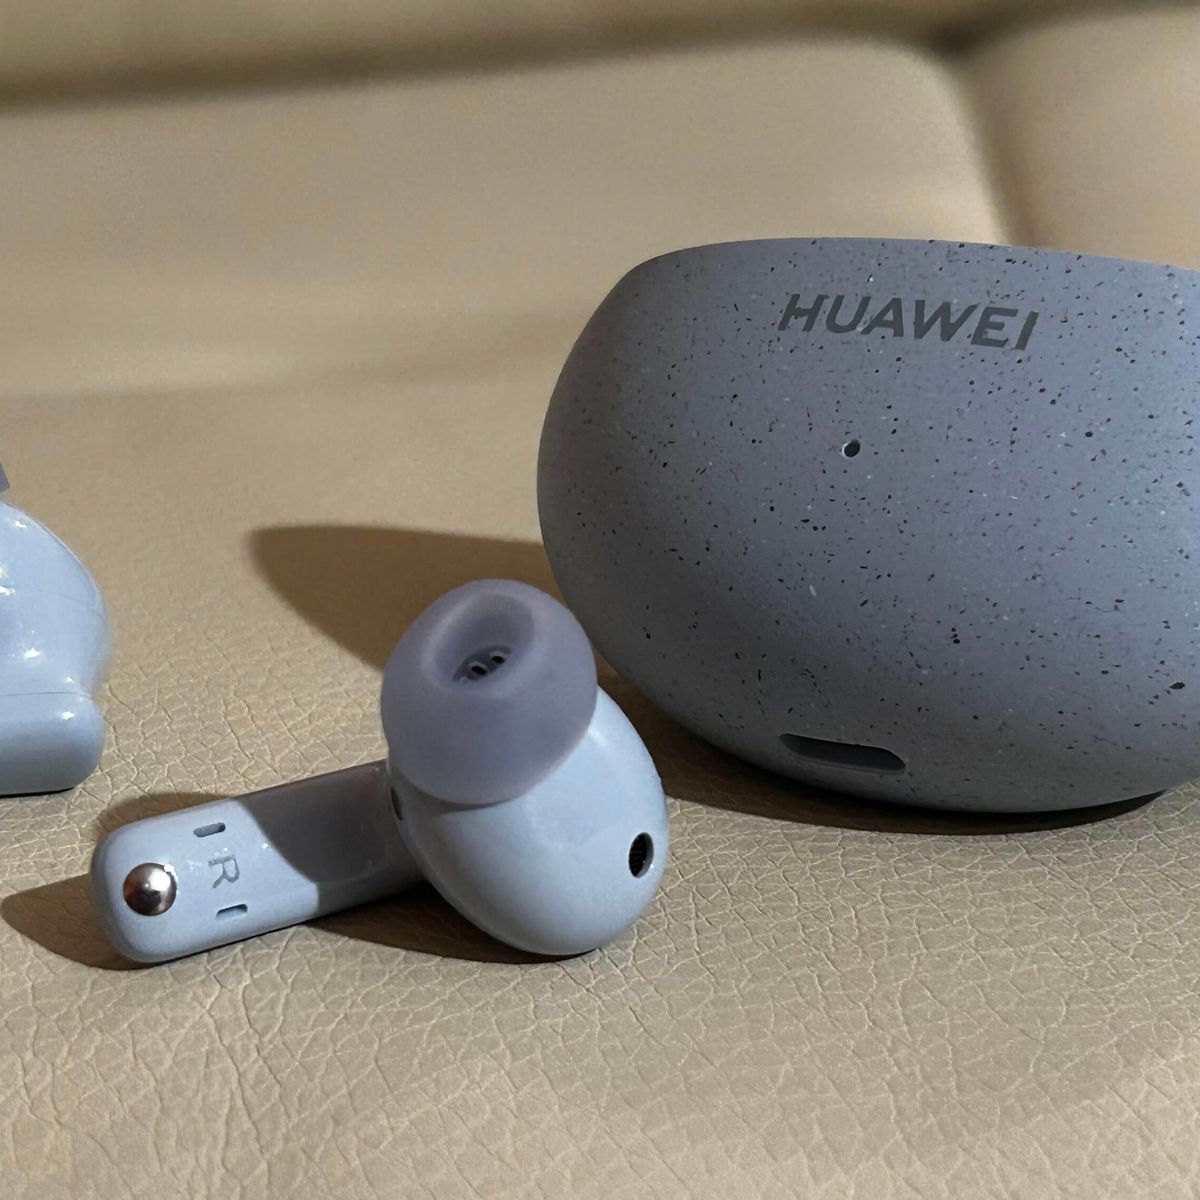 Audífonos inalámbricos Huawei FreeBuds 5I